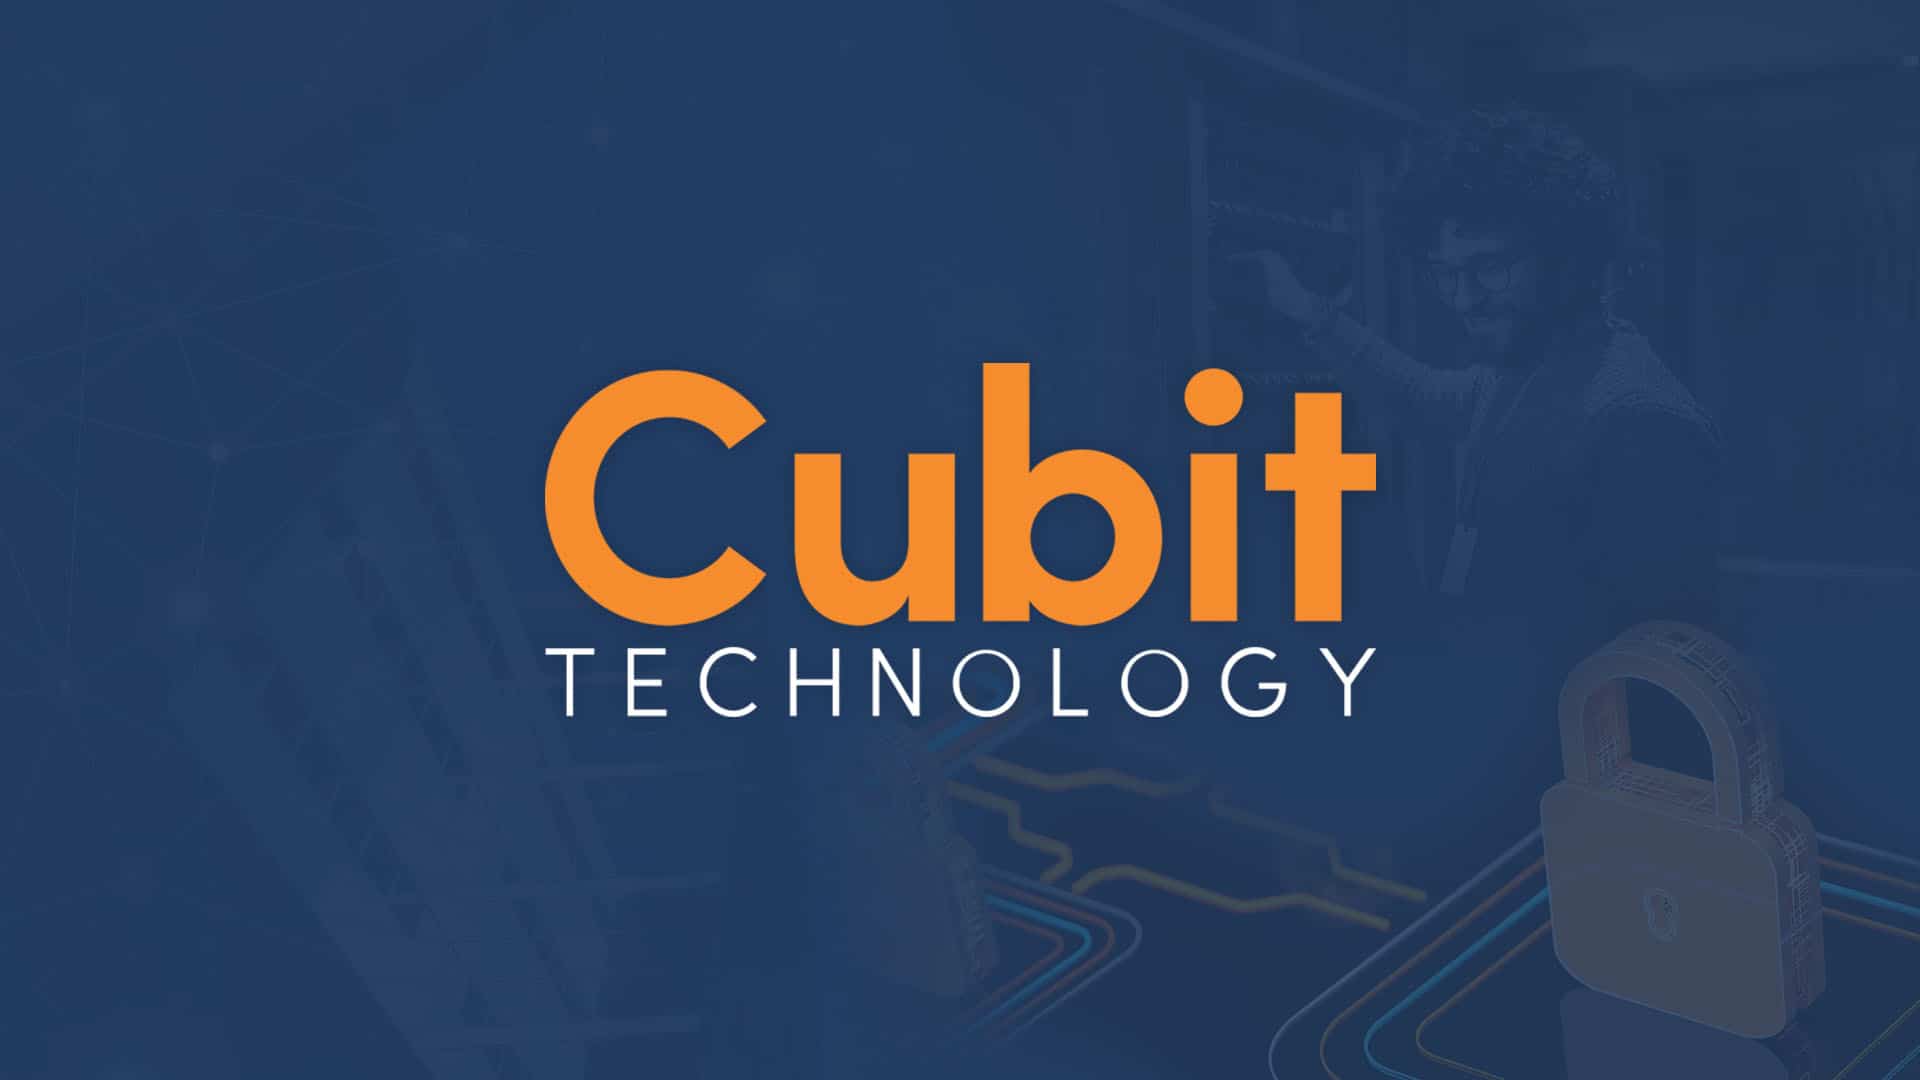 Cubit Technology Video